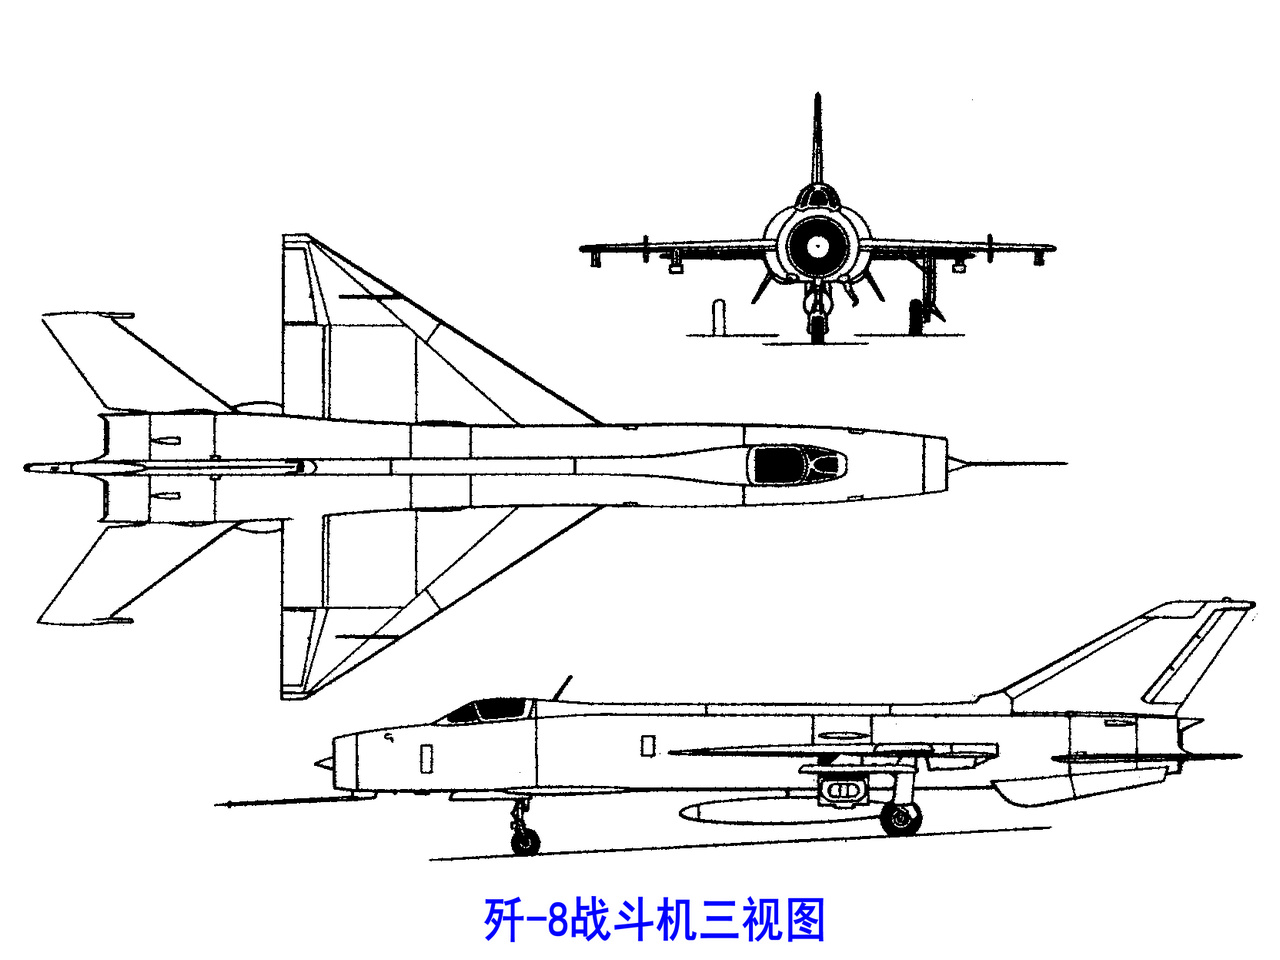 殲-8戰鬥機三視圖